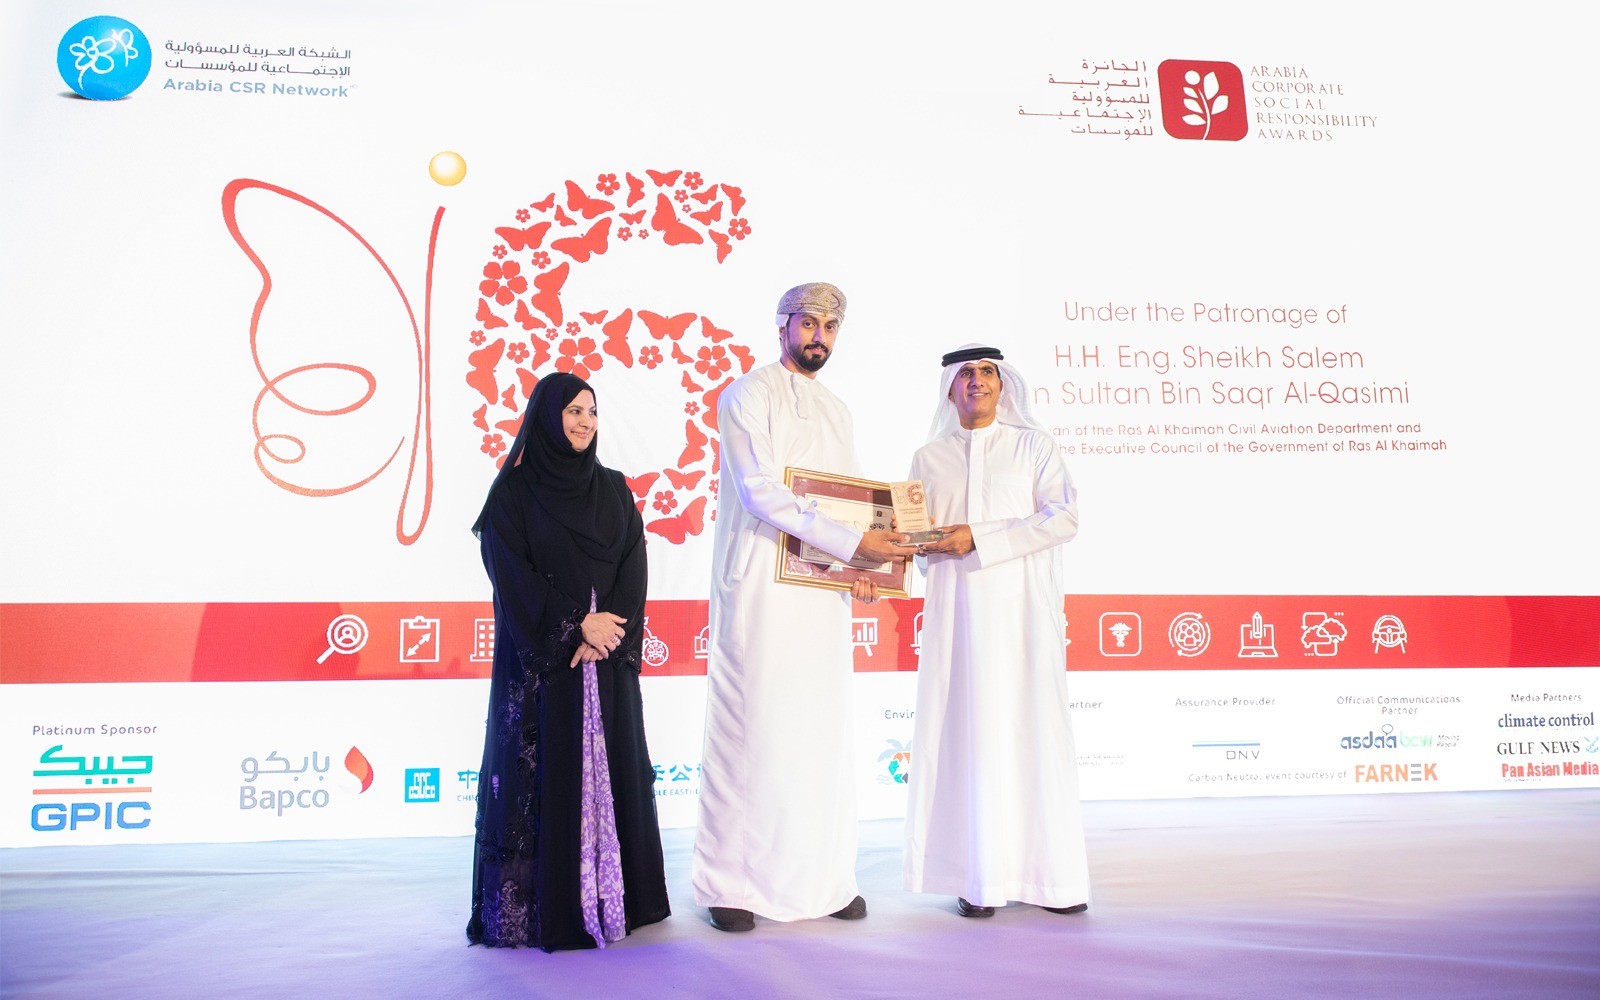 مؤسسة جسور تحصد المركز الثاني عربيا في الجائزة العربية للمسؤولية الاجتماعية للمؤسسات